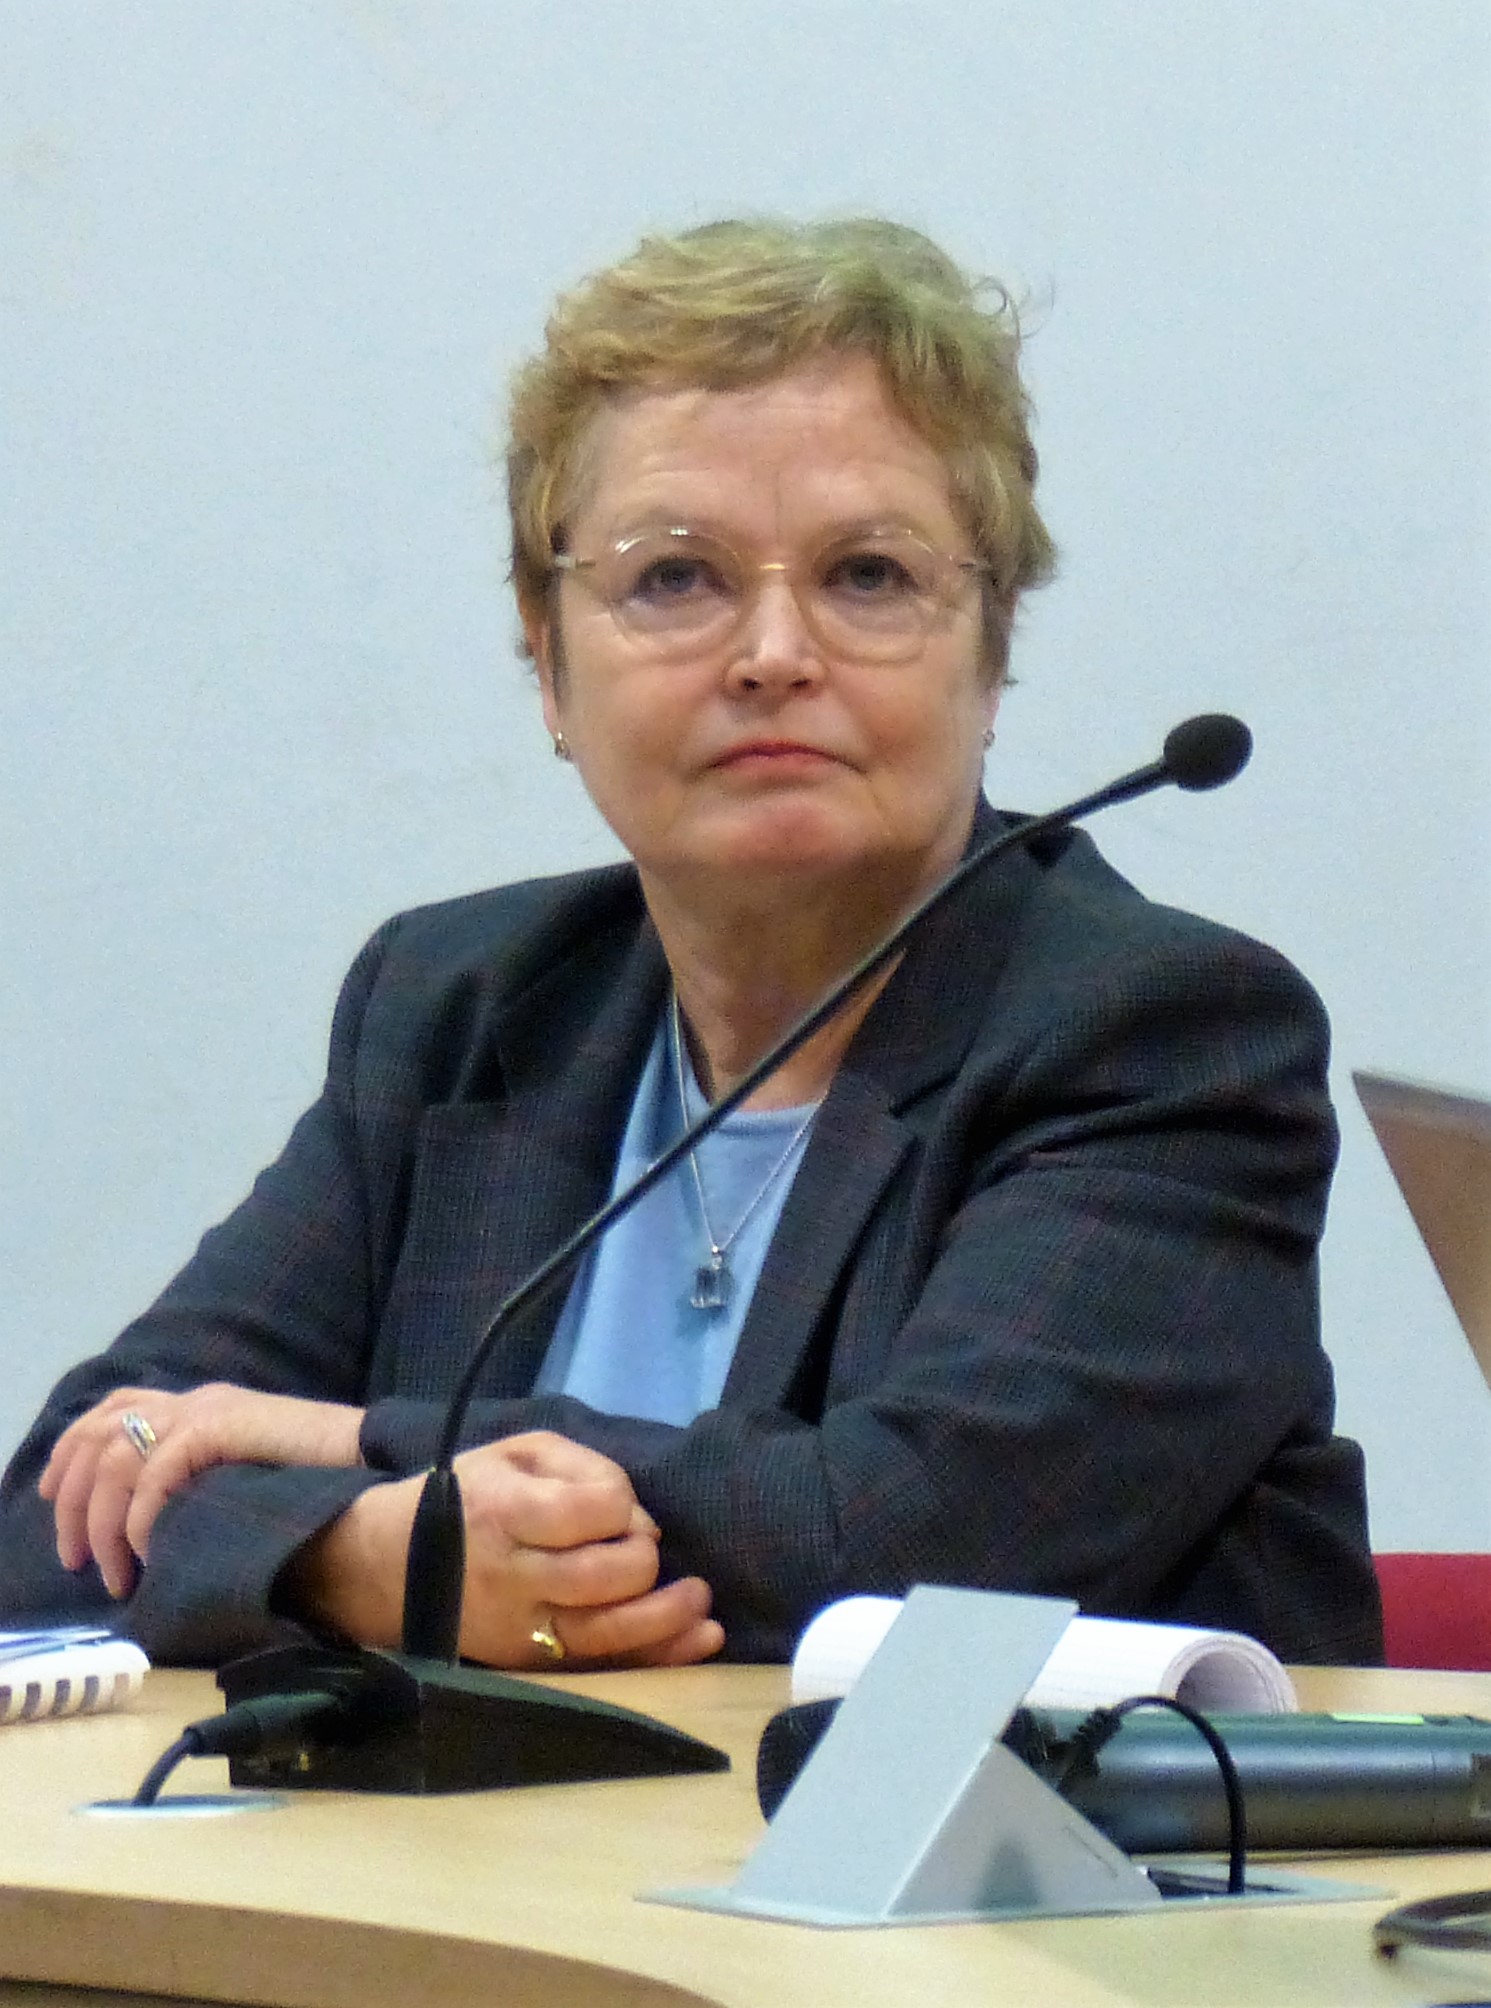 Ute Meyenberg